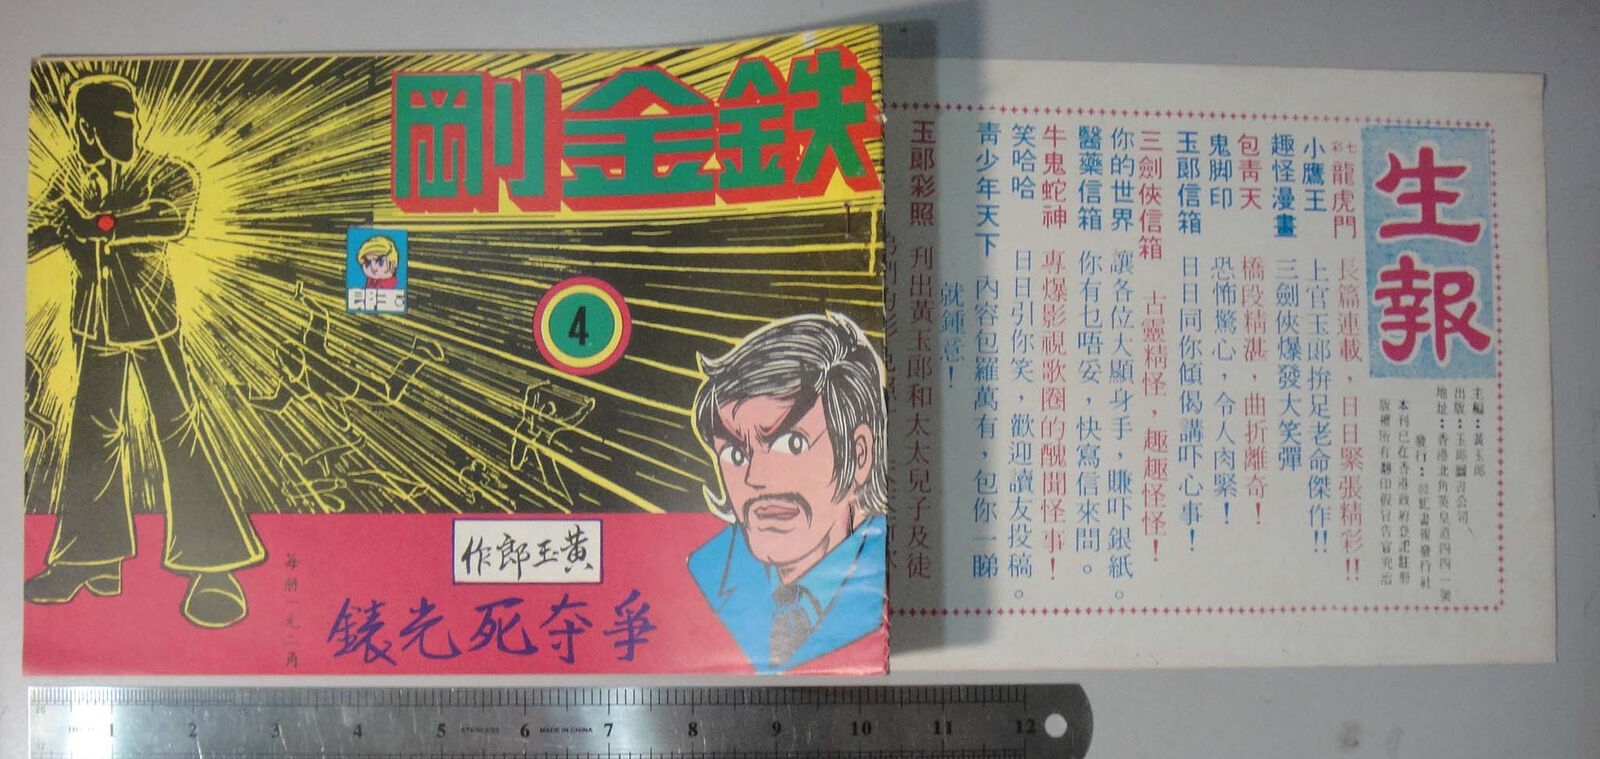 (BS1) 1970's Hong Kong Chinese Tony Wong Comic - 鐵金剛 Iron Fist #4